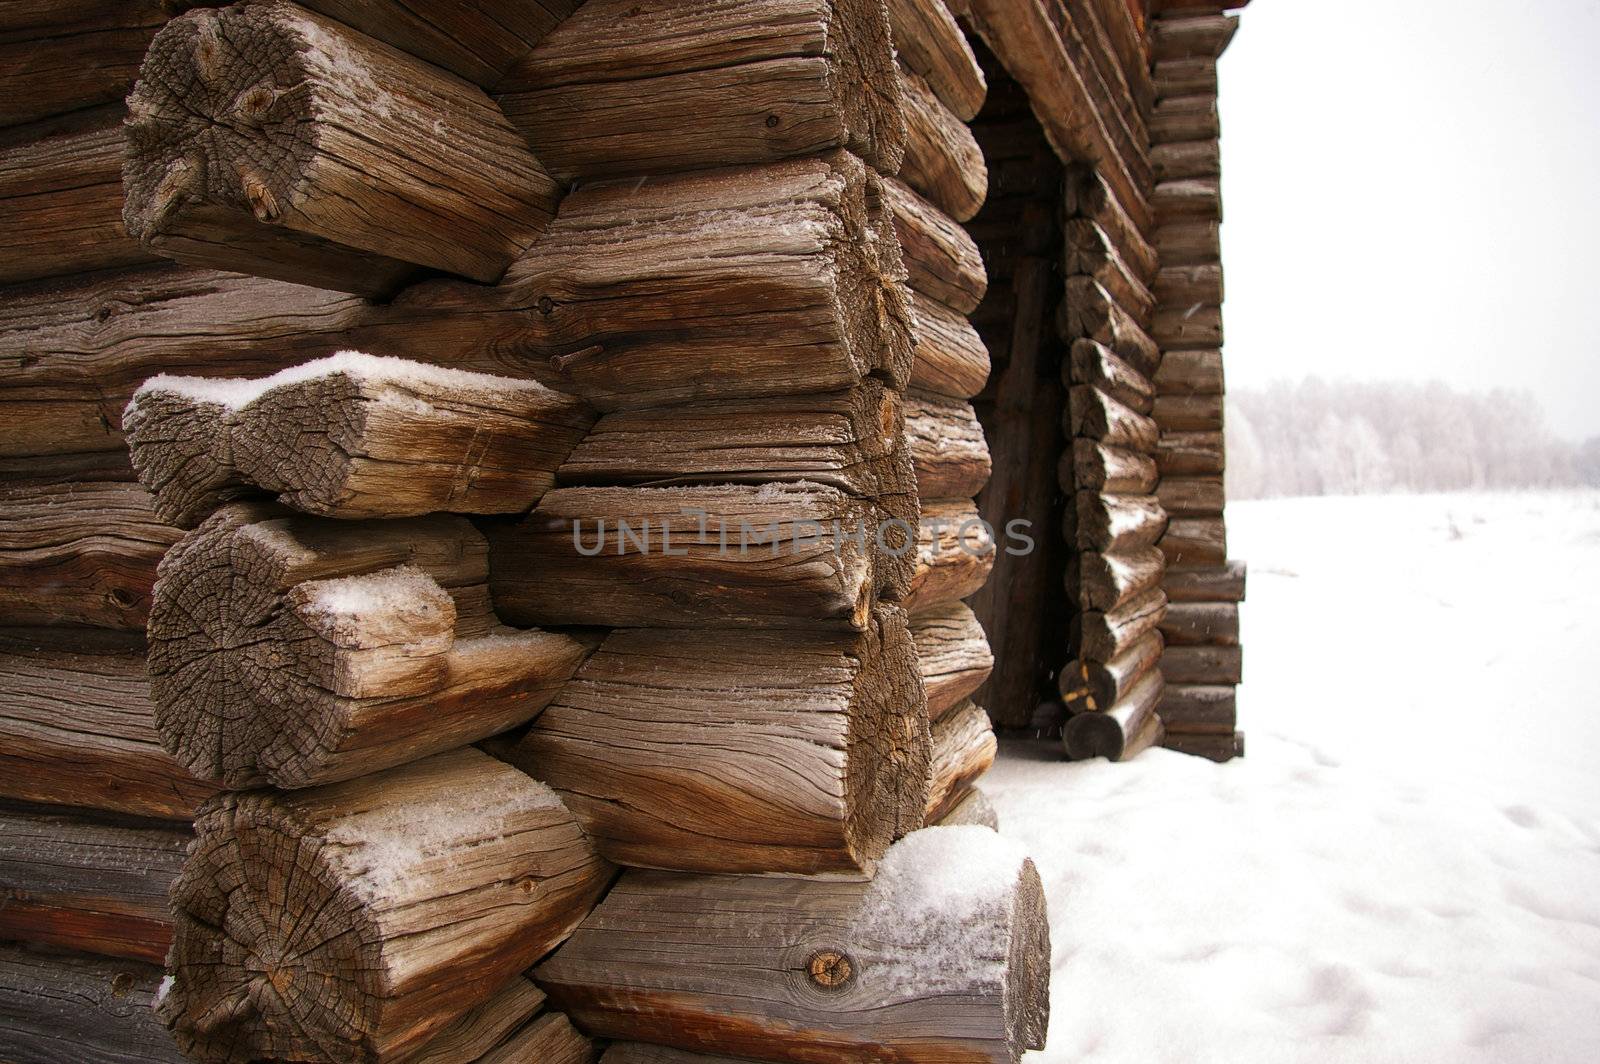 Corner of Timbered log hut by palomnik